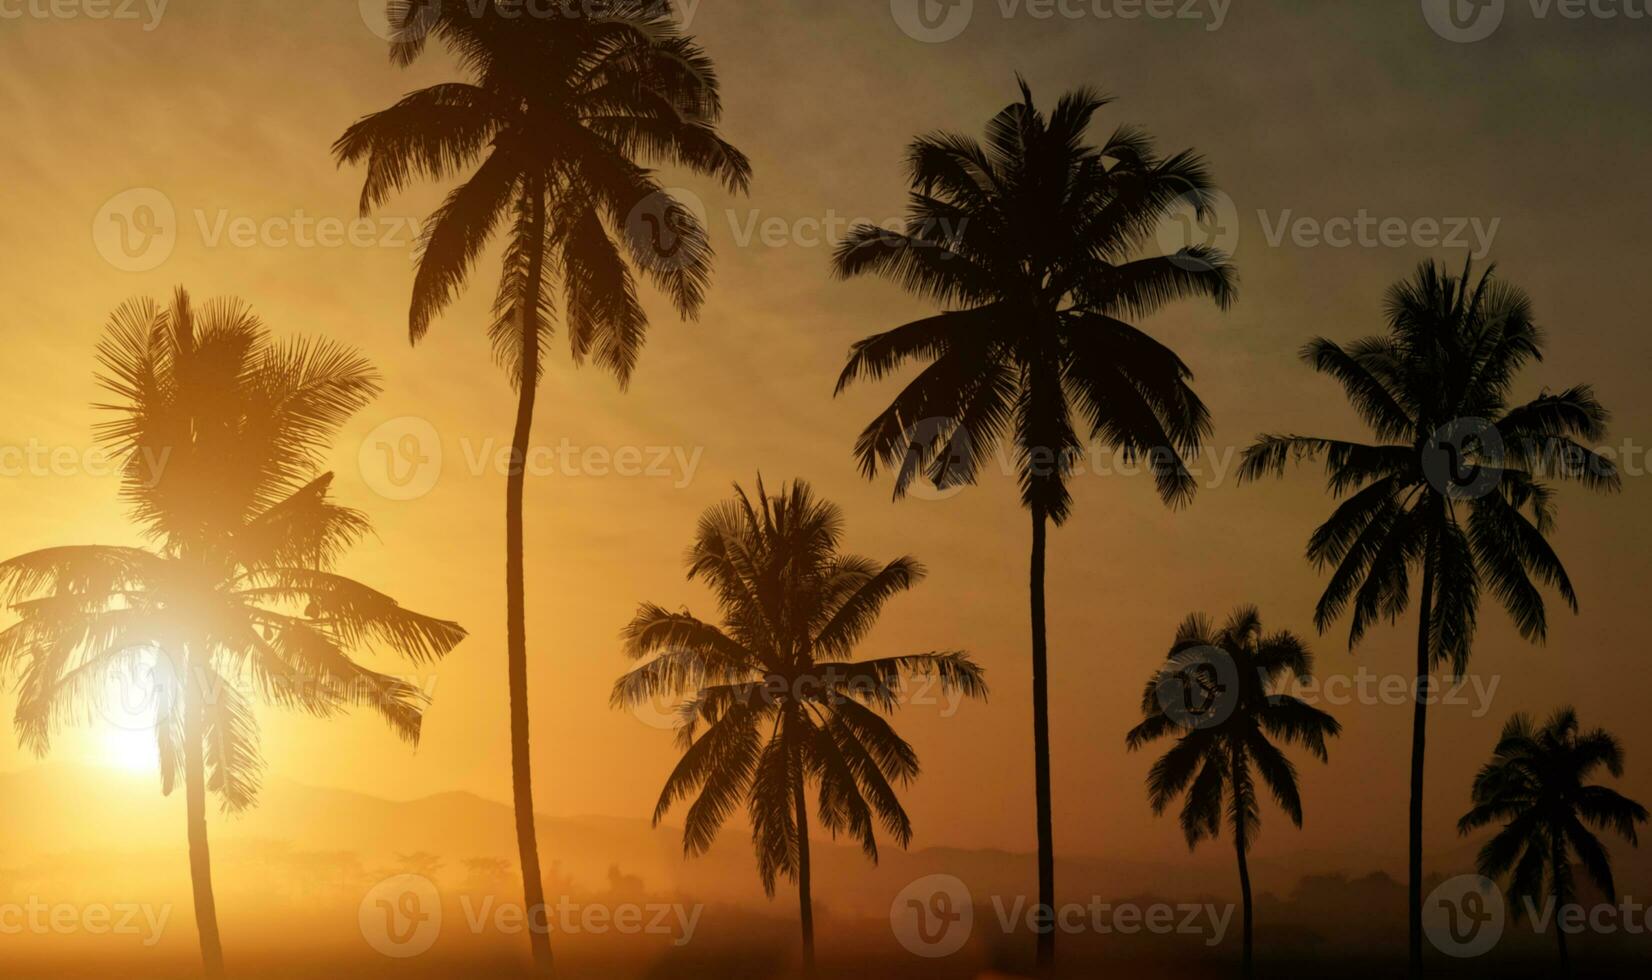 Silhouette von Palmen bei Sonnenuntergang Hintergrund. foto